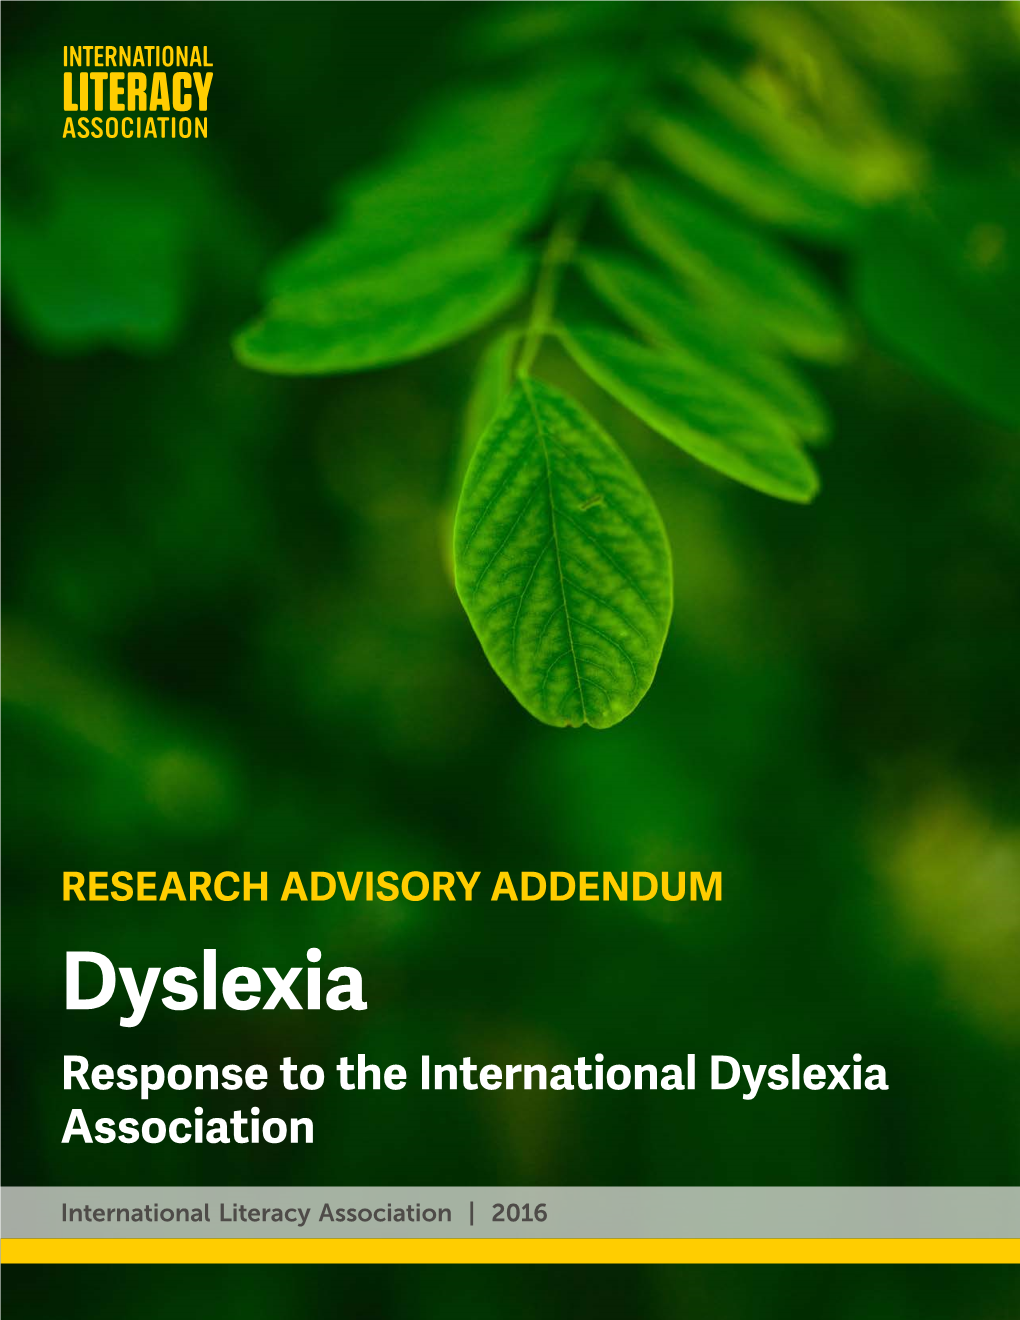 Dyslexia Response to the International Dyslexia Association